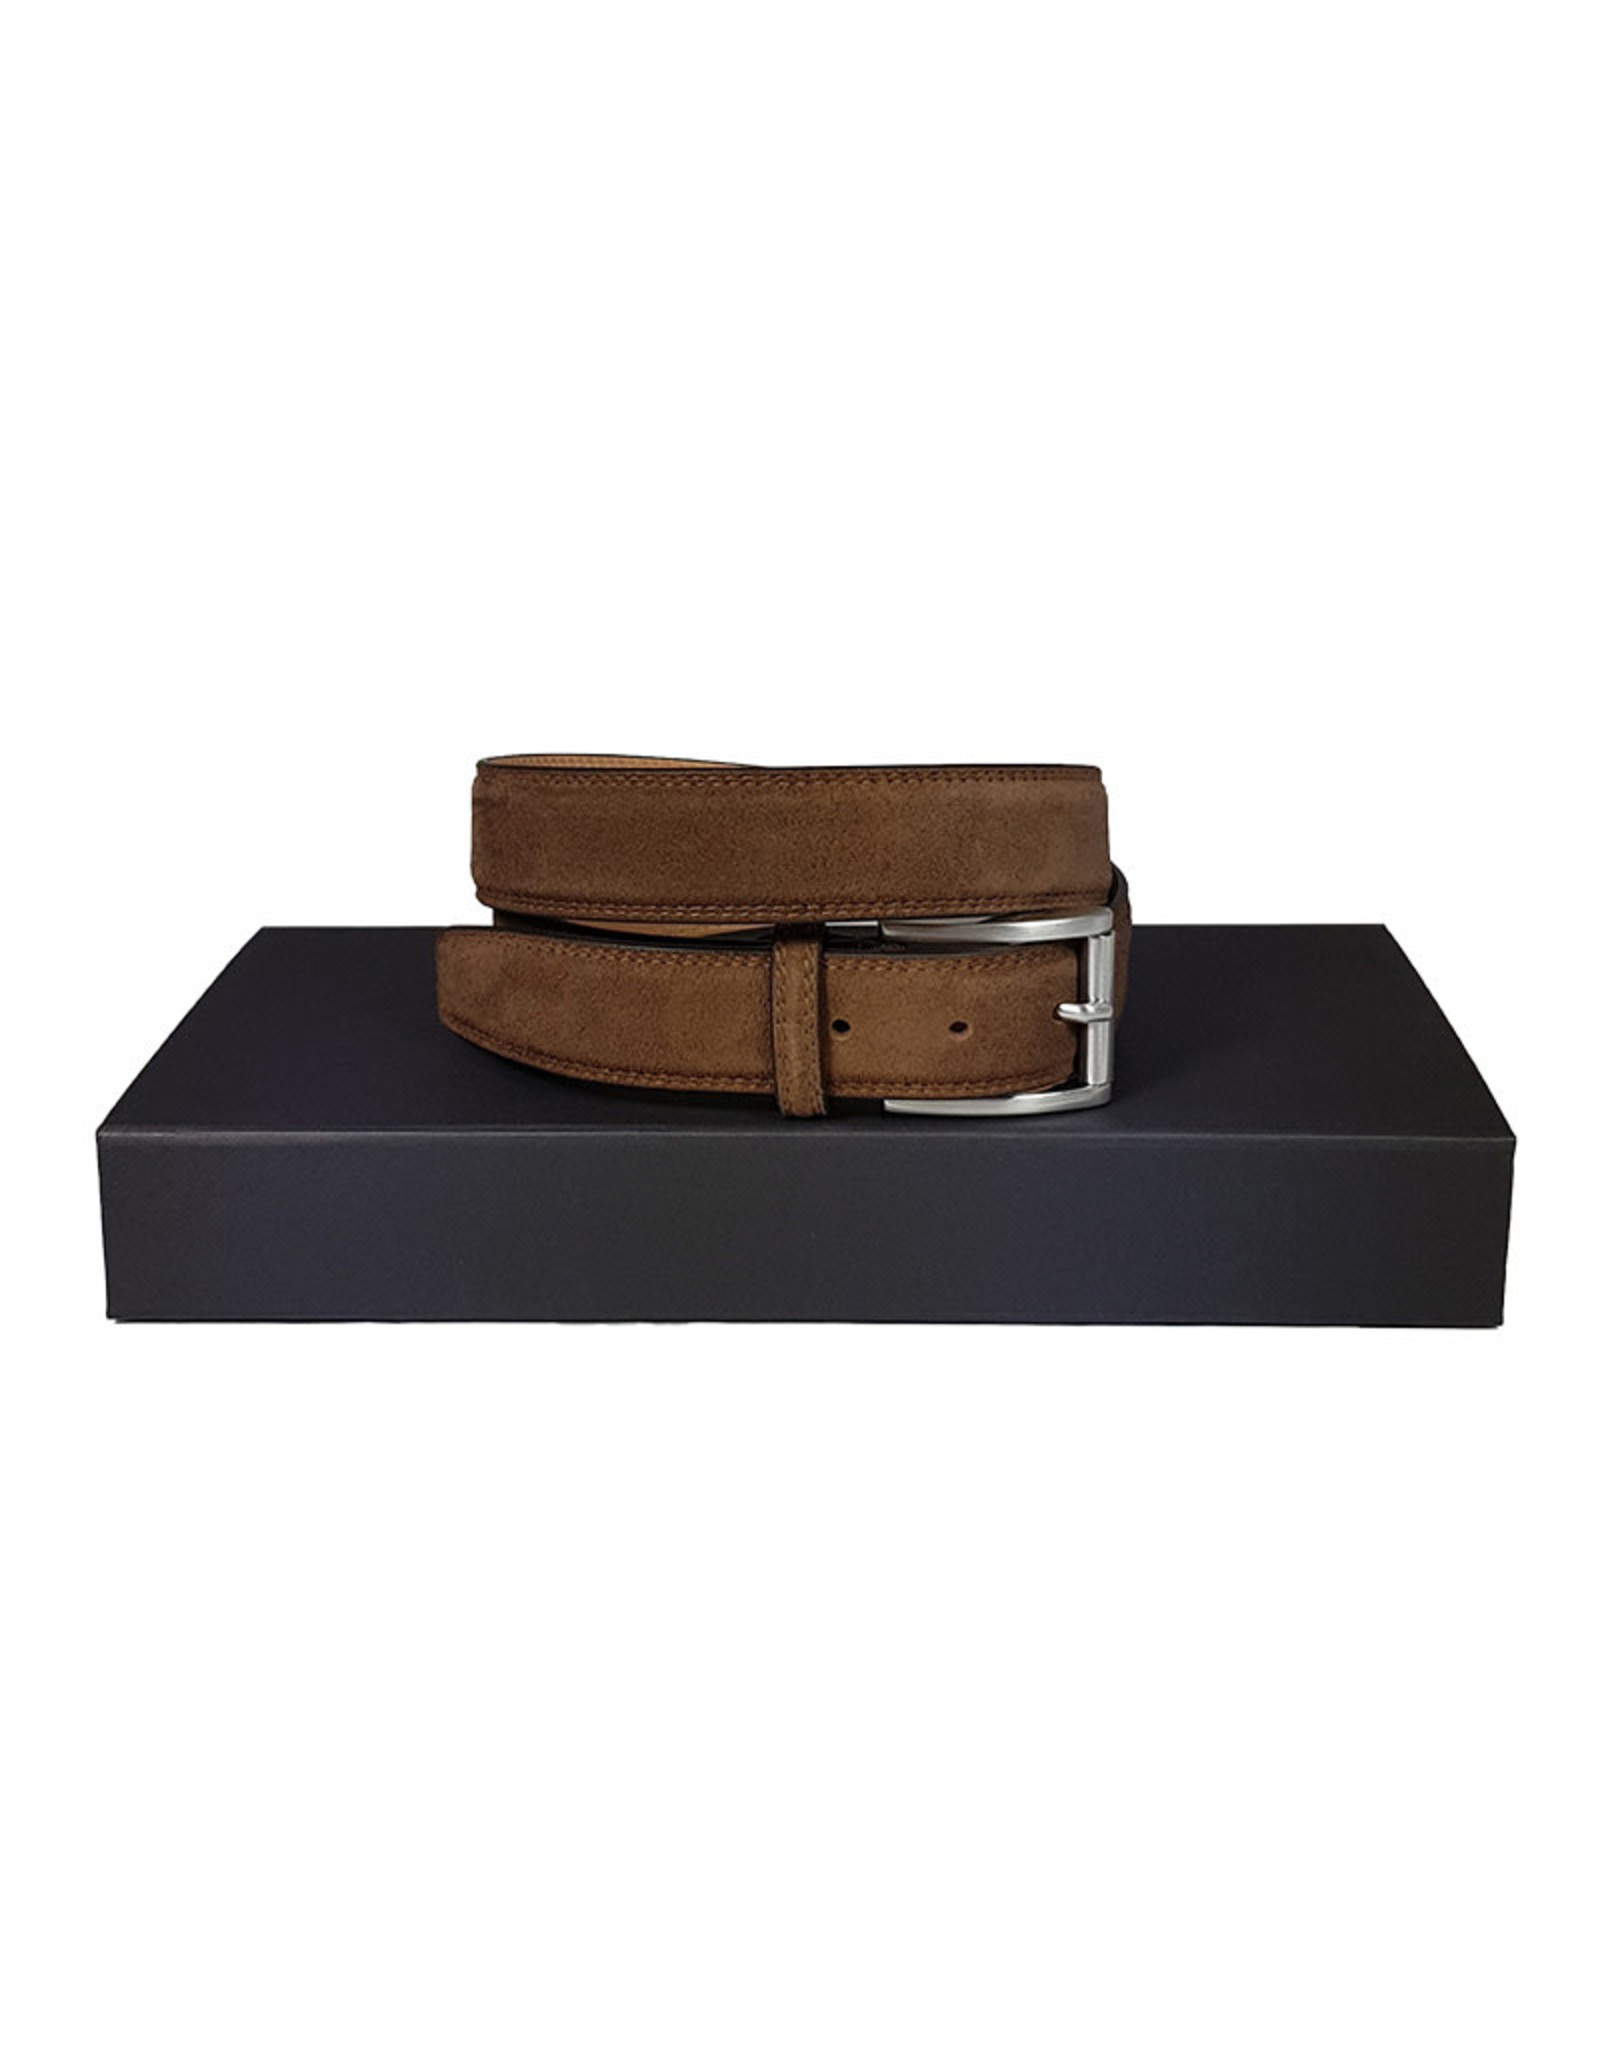 Belts+ Belts+ belt buckskin brown Spaccato